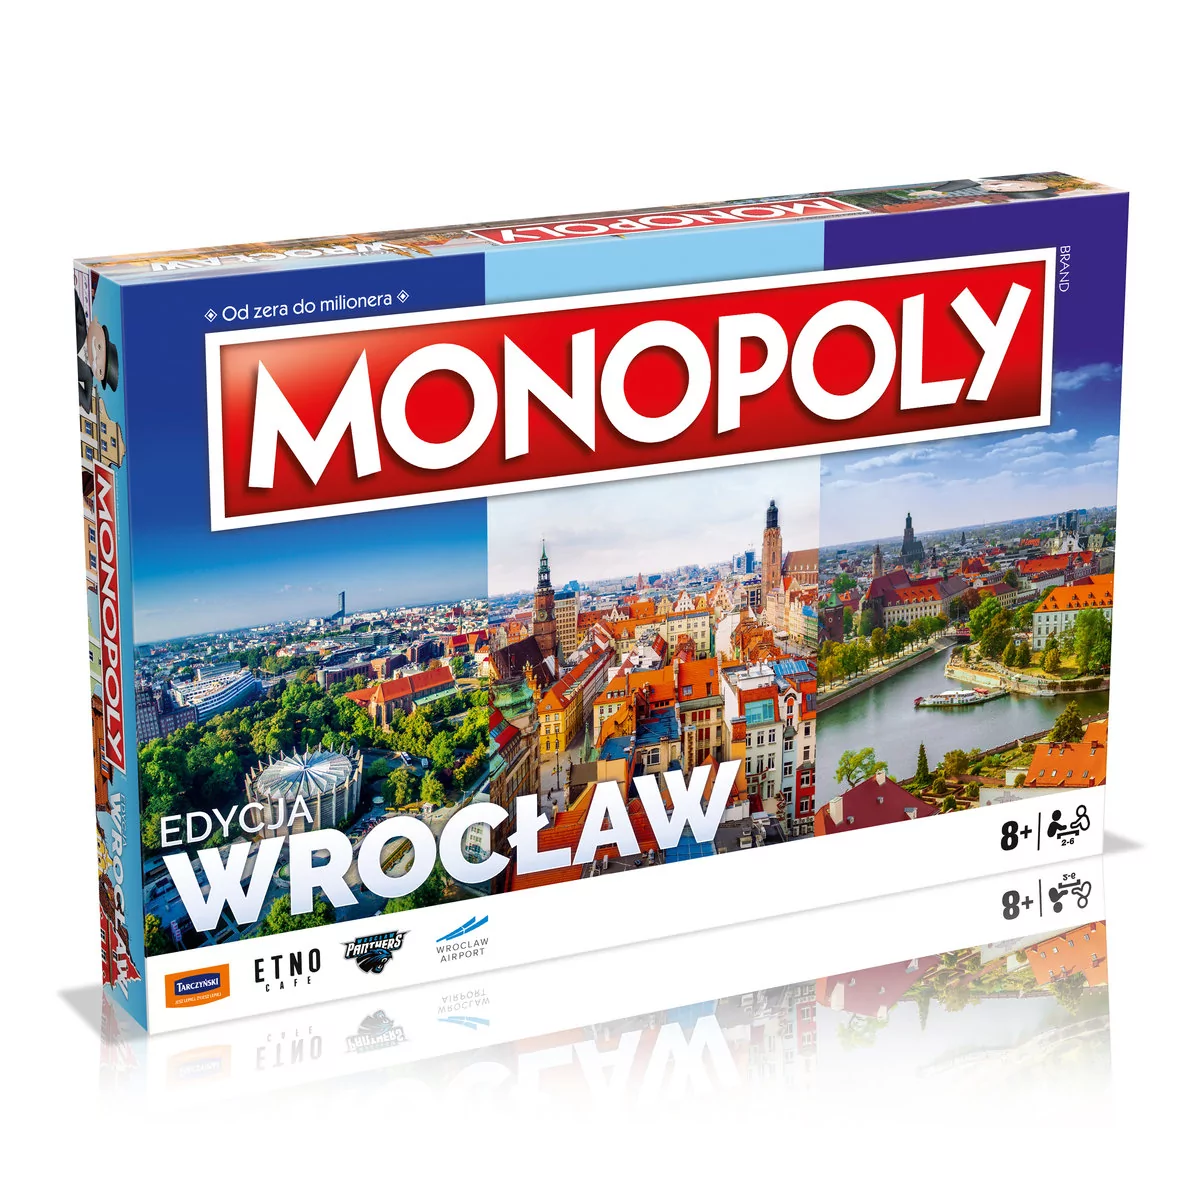 Monopoly Wrocław reedycja Nowa